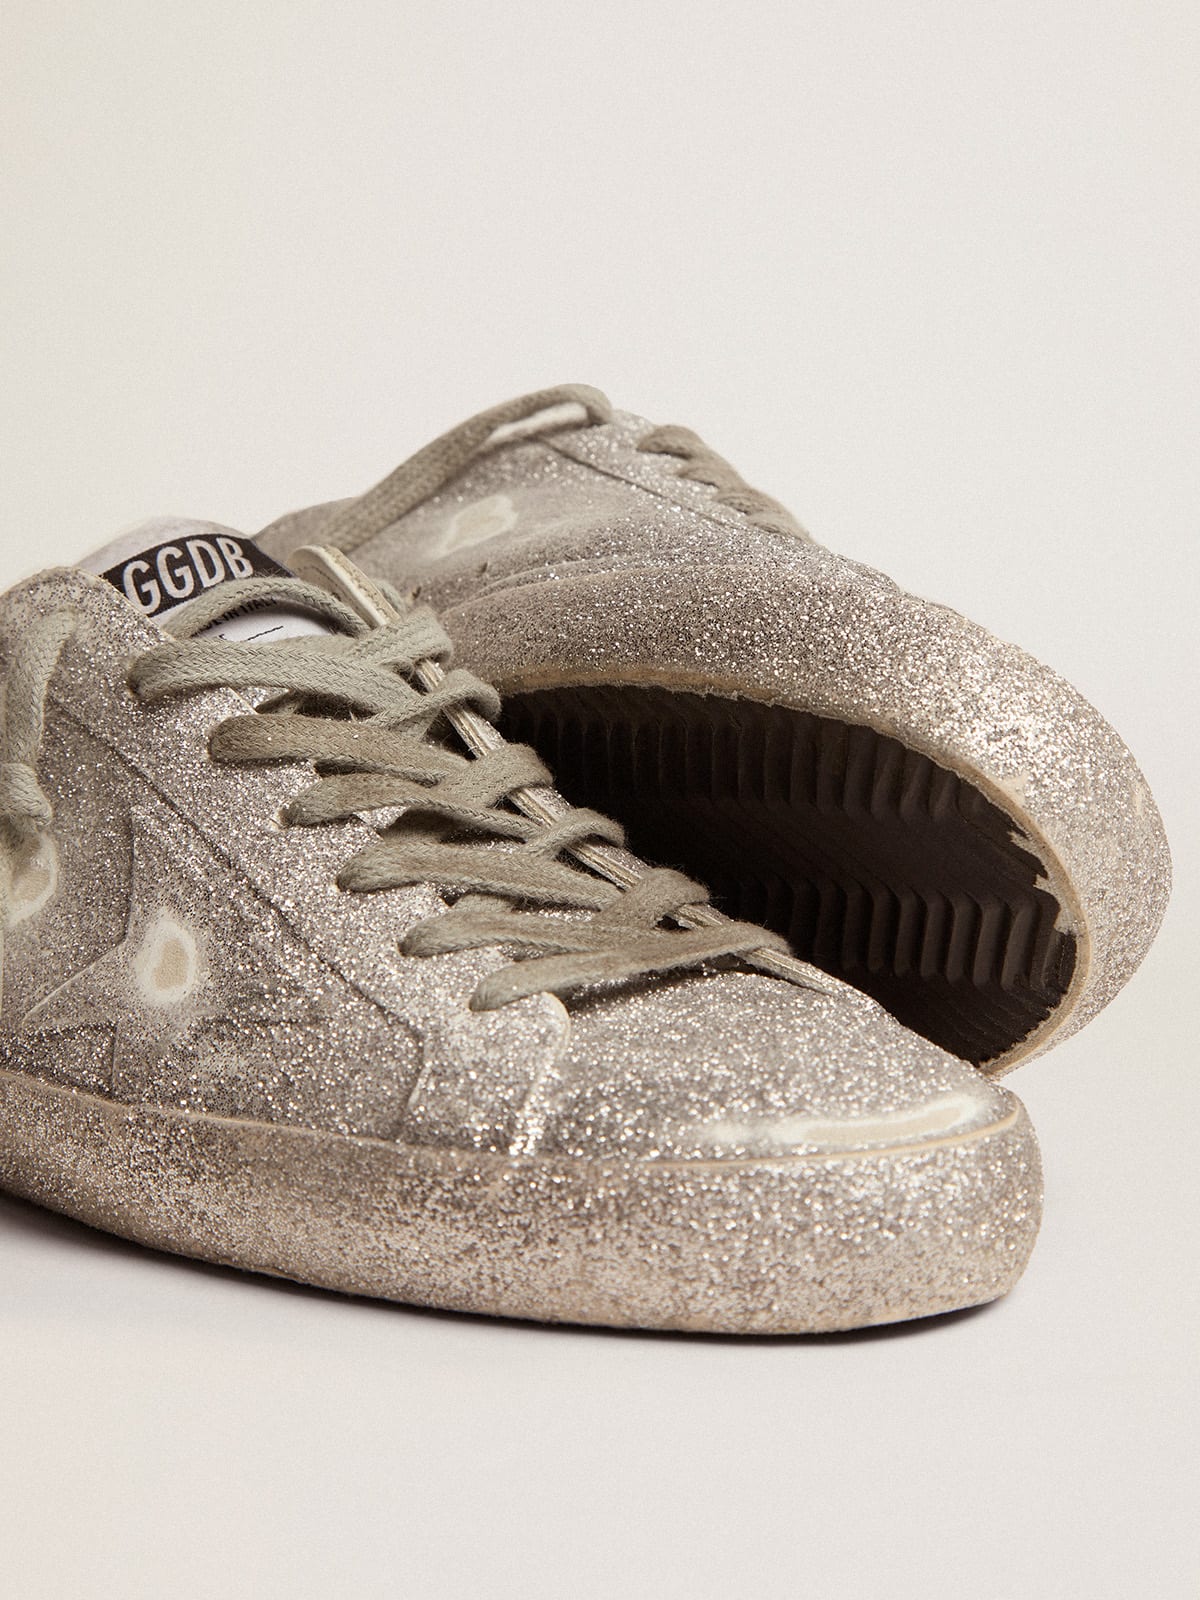 Golden Goose - Sneaker Super-Star in pelle color argento con polverizzazione glitter all-over in 